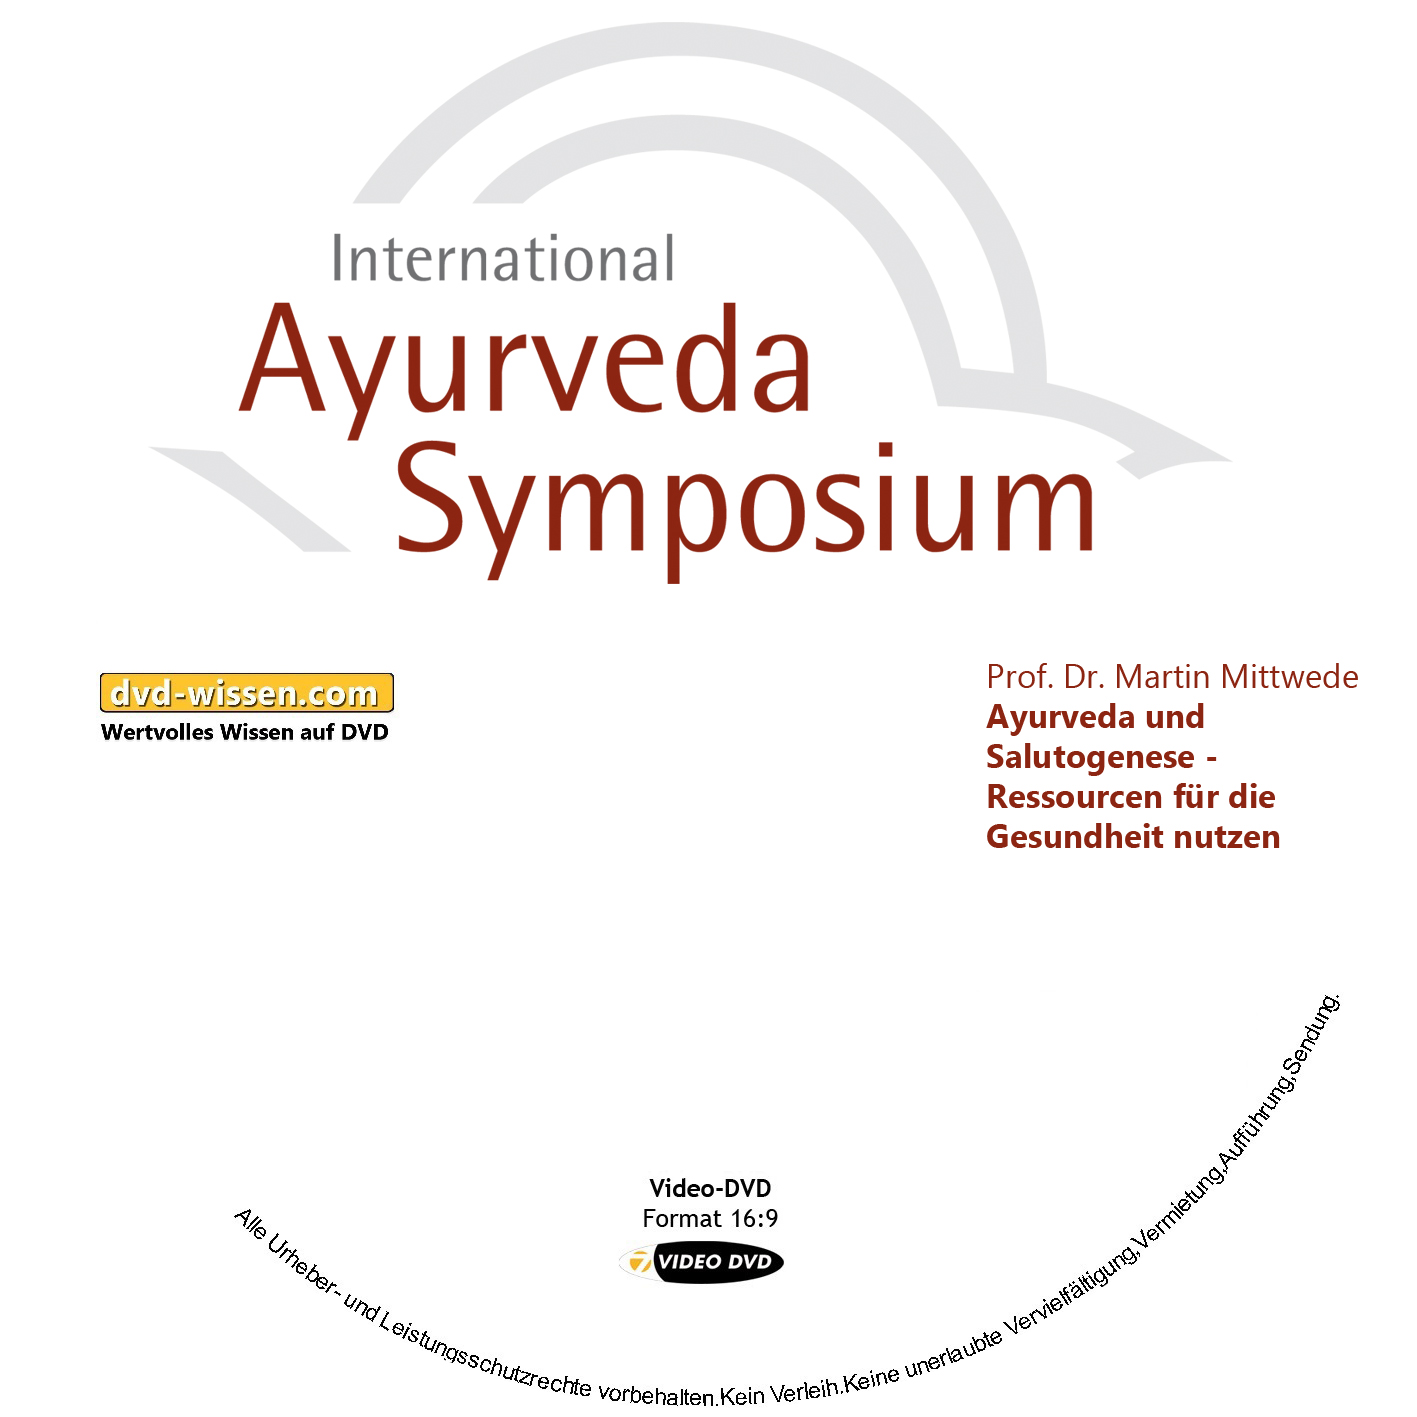 Prof. Dr. Martin Mittwede: Ayurveda und Salutogenese - Ressourcen für die Gesundheit nutzen